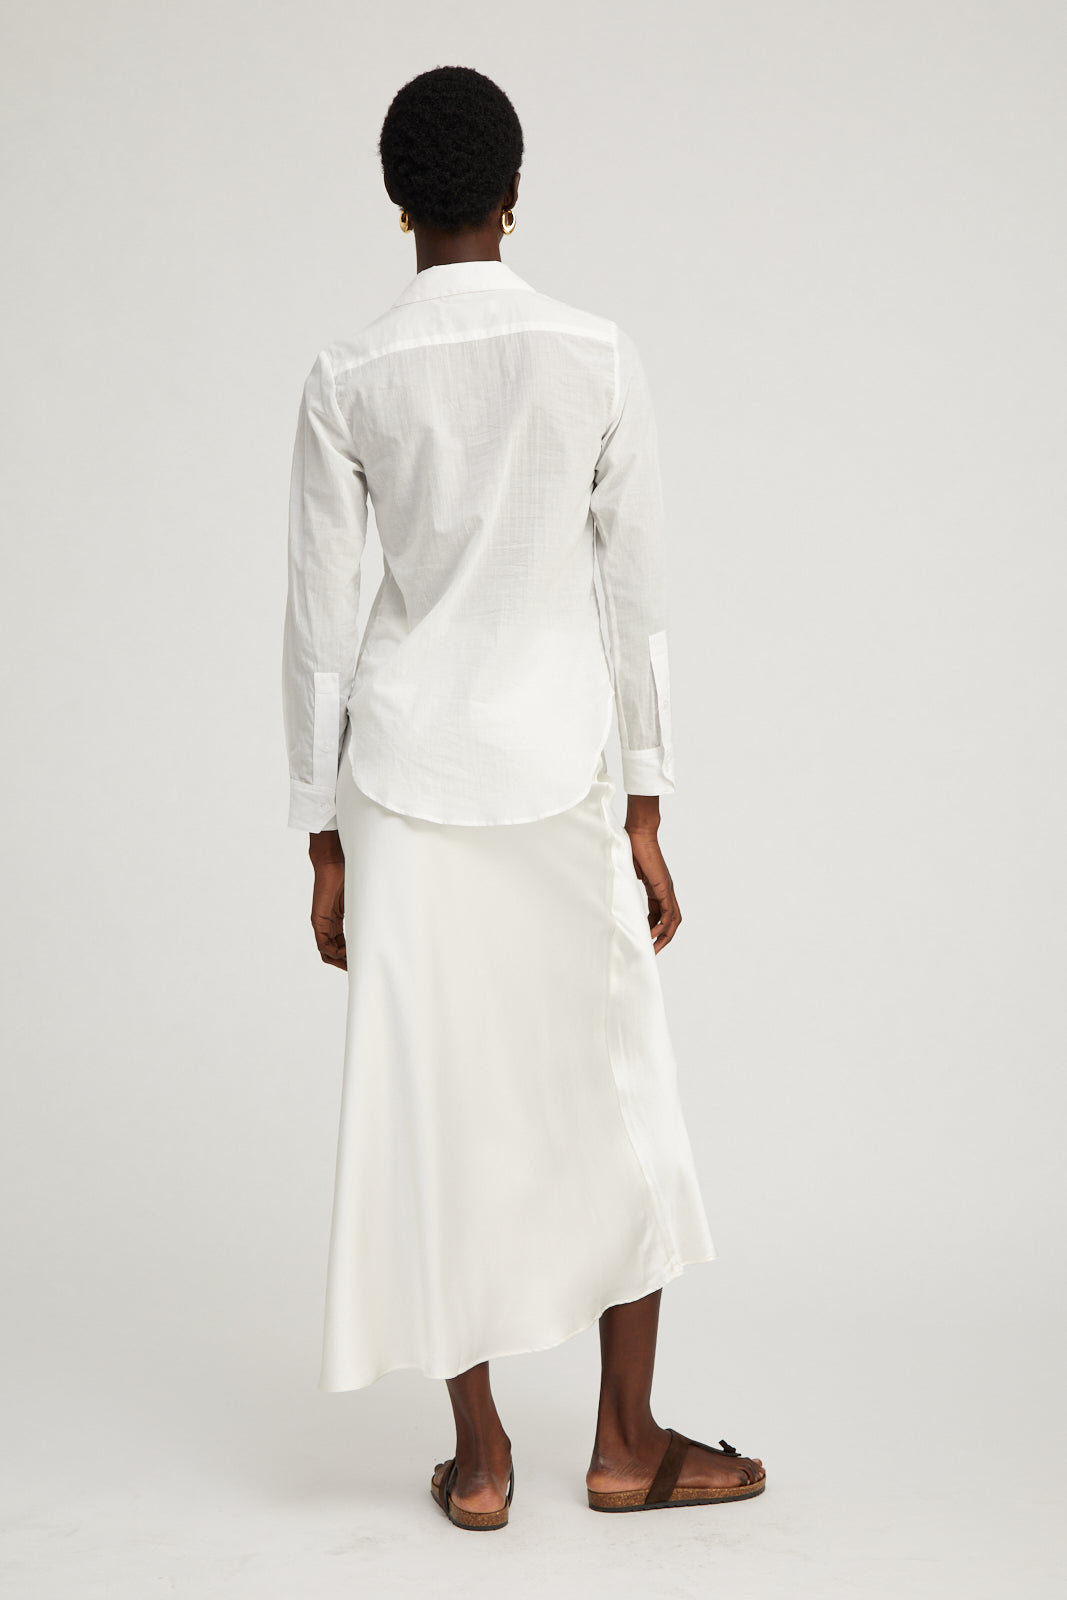 White Silk Bias Maxi Skirt